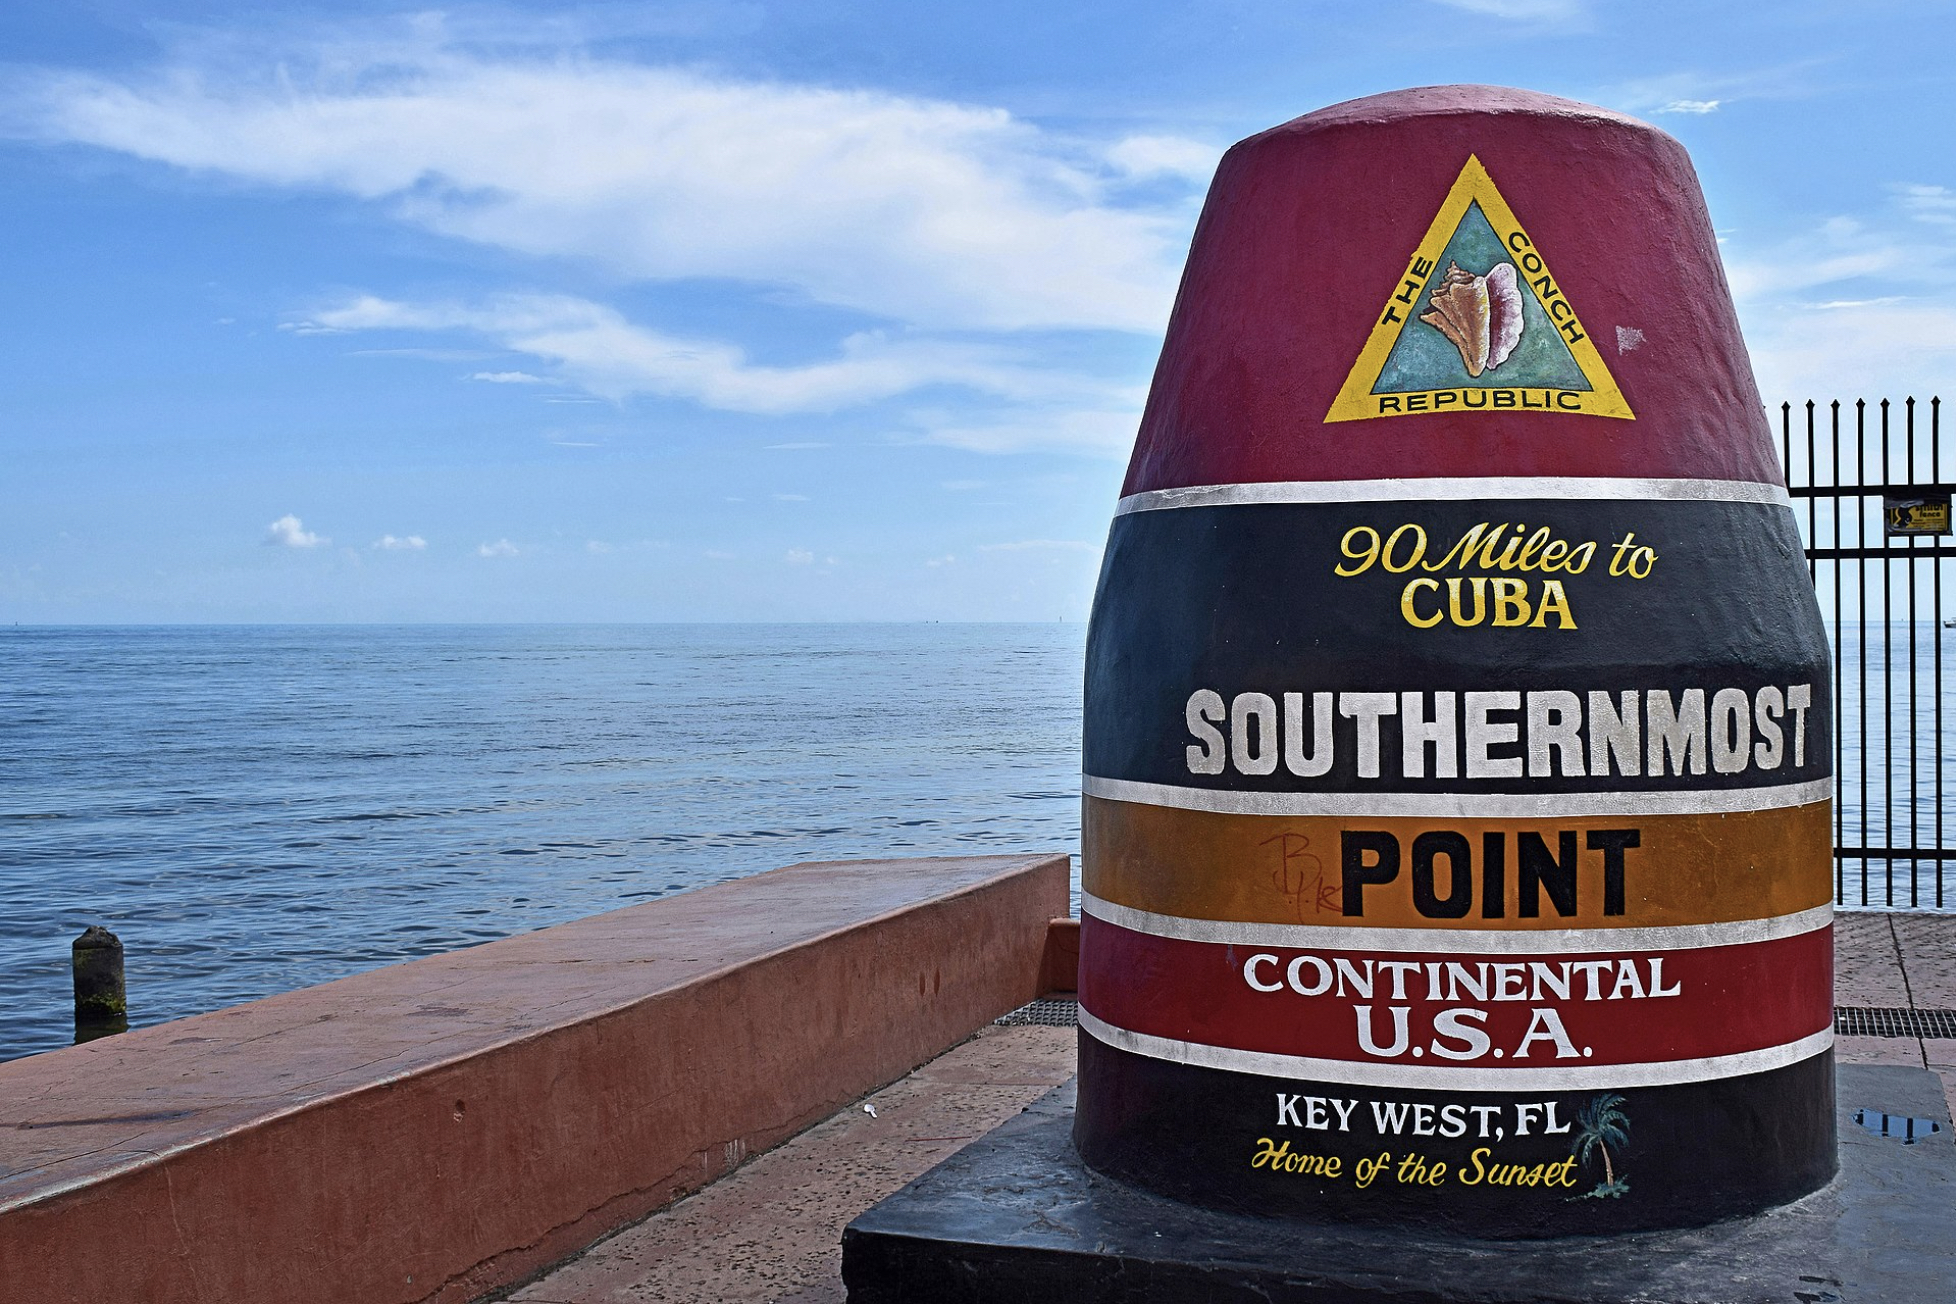 La boya indica que Cuba está a 90 millas. (Radomianin / CC BY-SA 4.0)